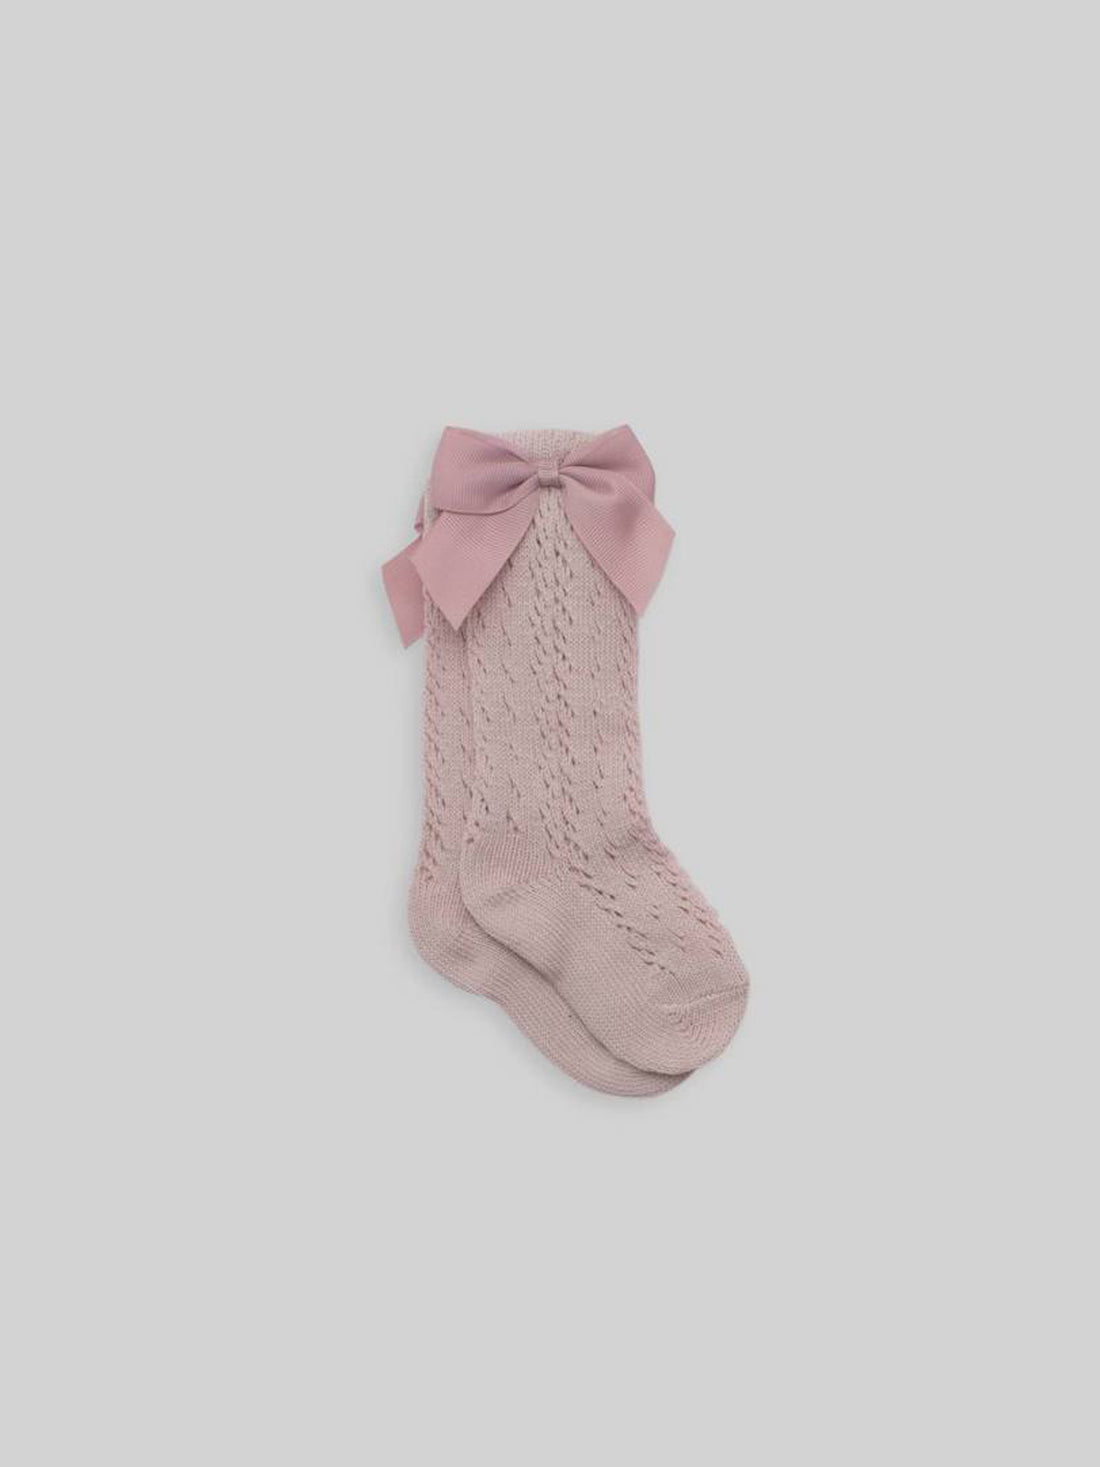 Mesh Cotton Socks Grosgrain Bow in Dusty Pink